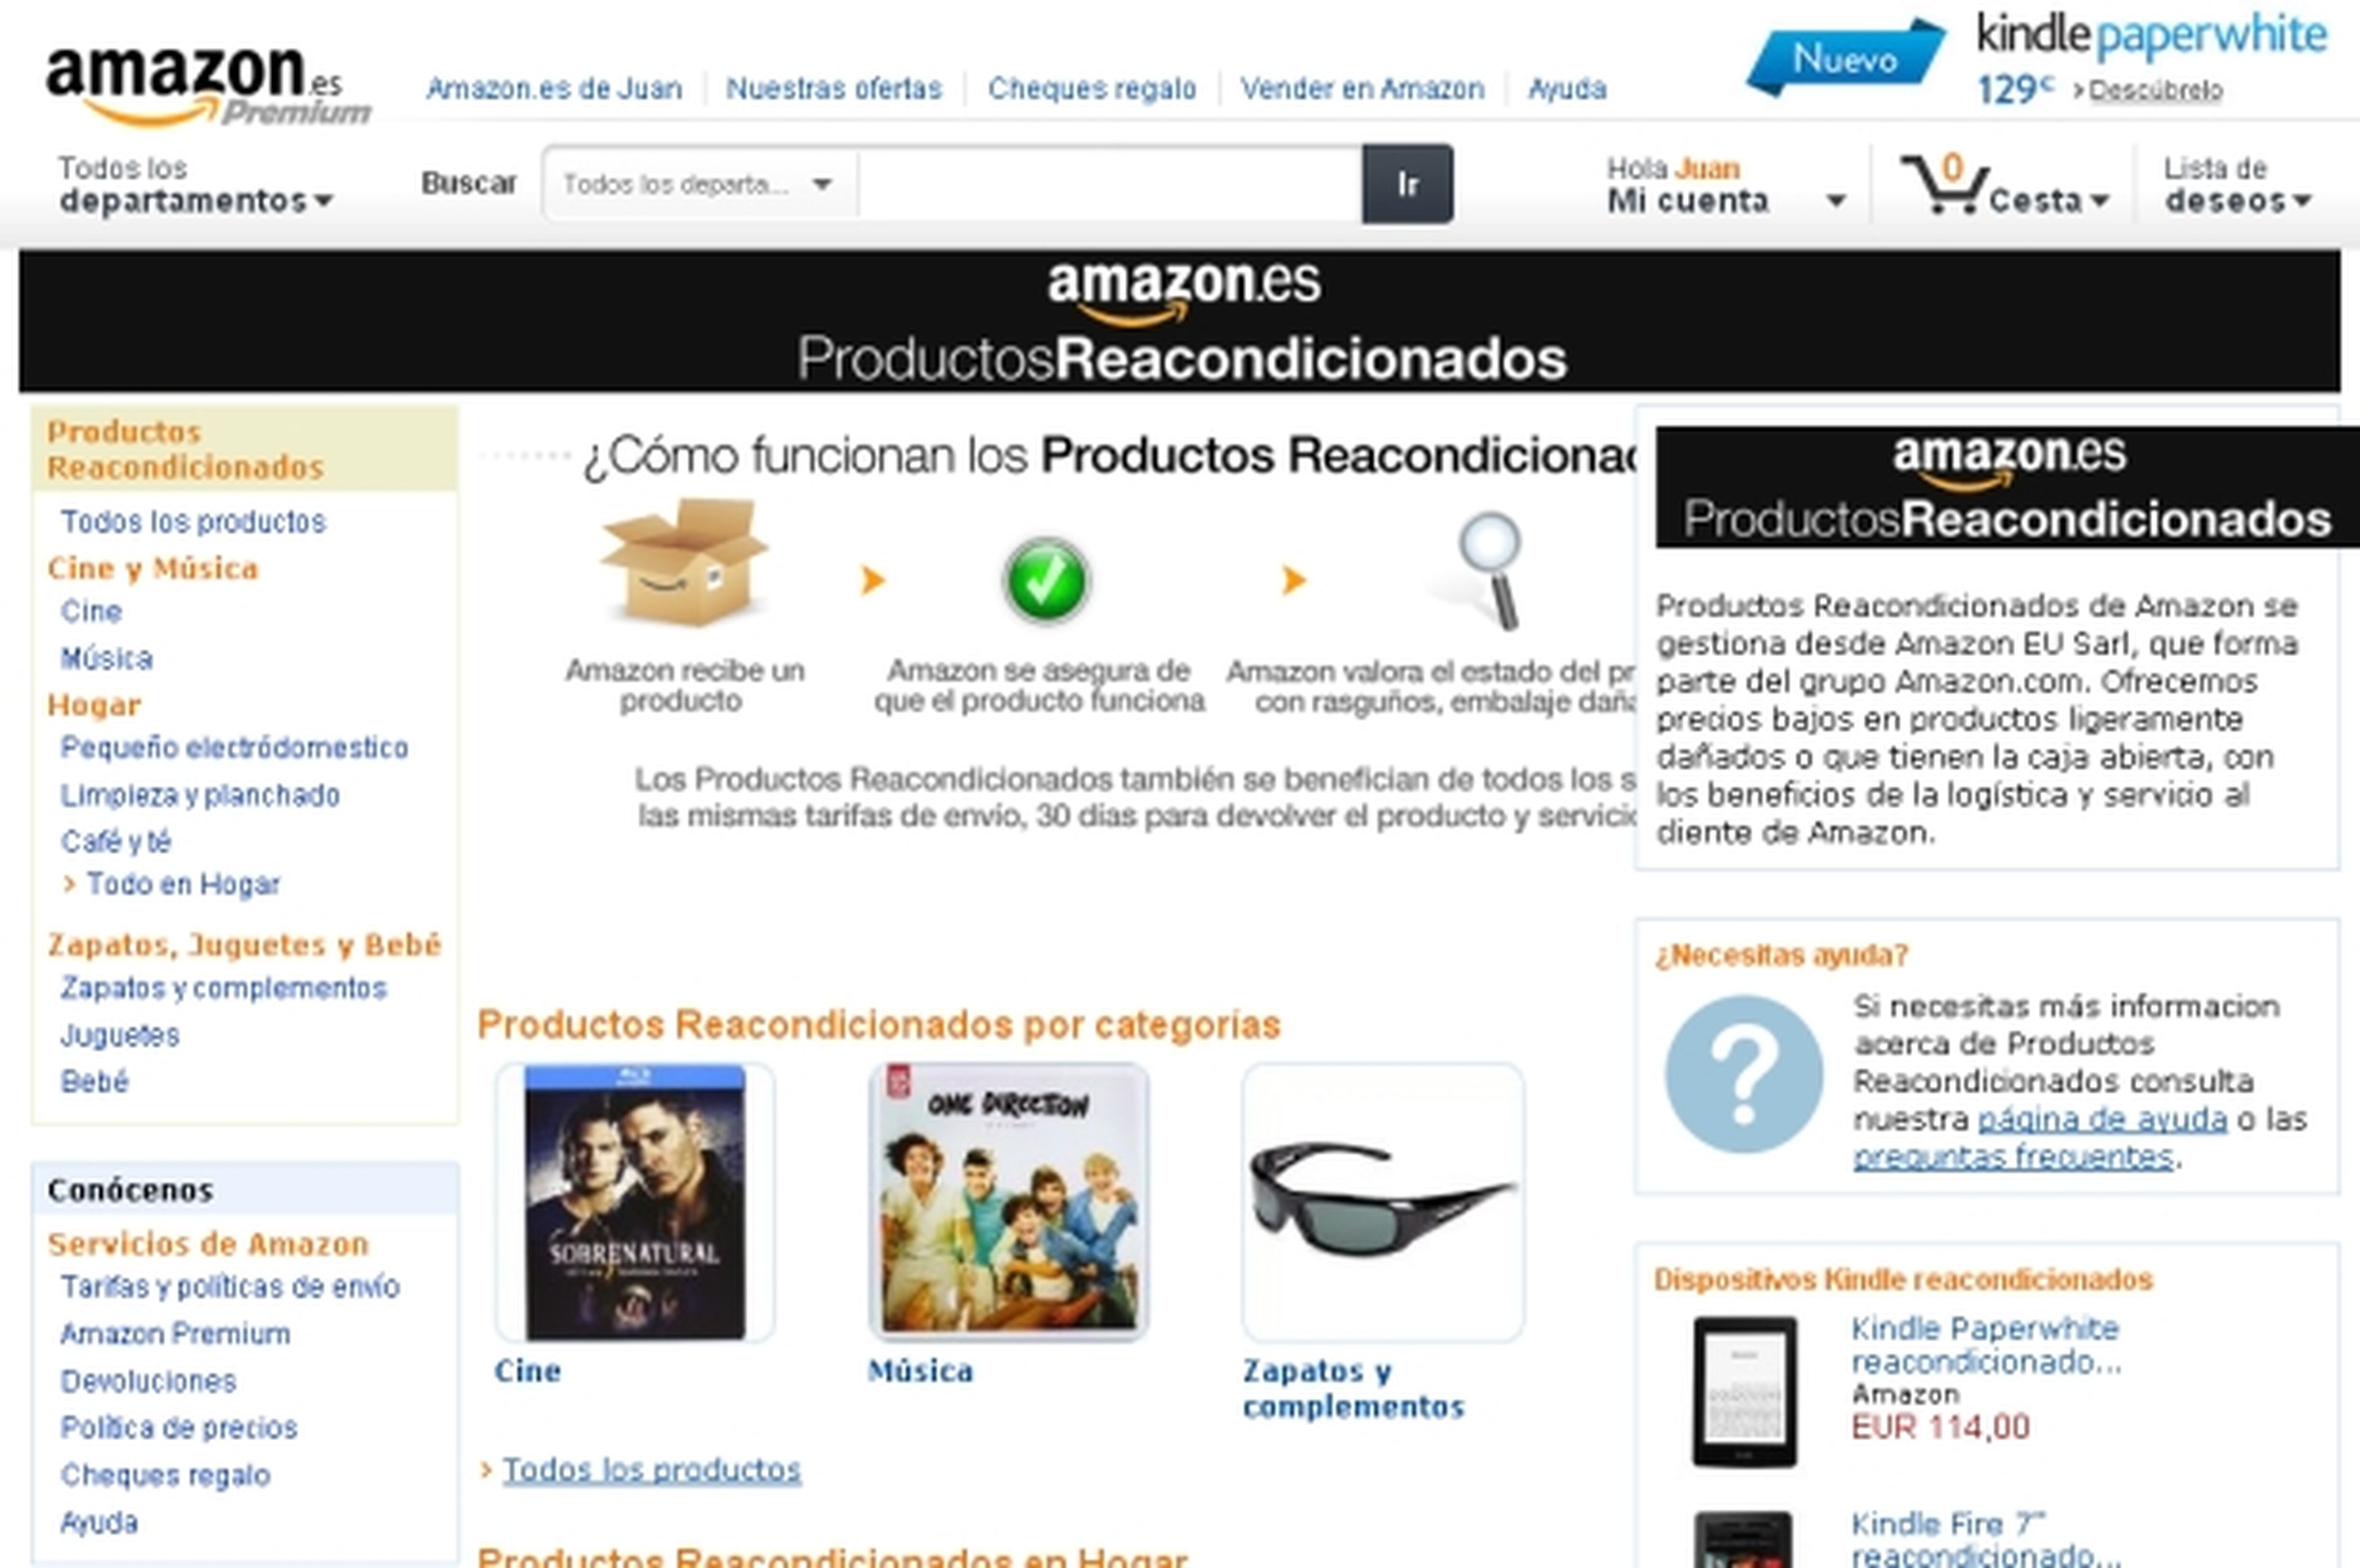 Amazon reorganiza su sección de productos reacondicionados